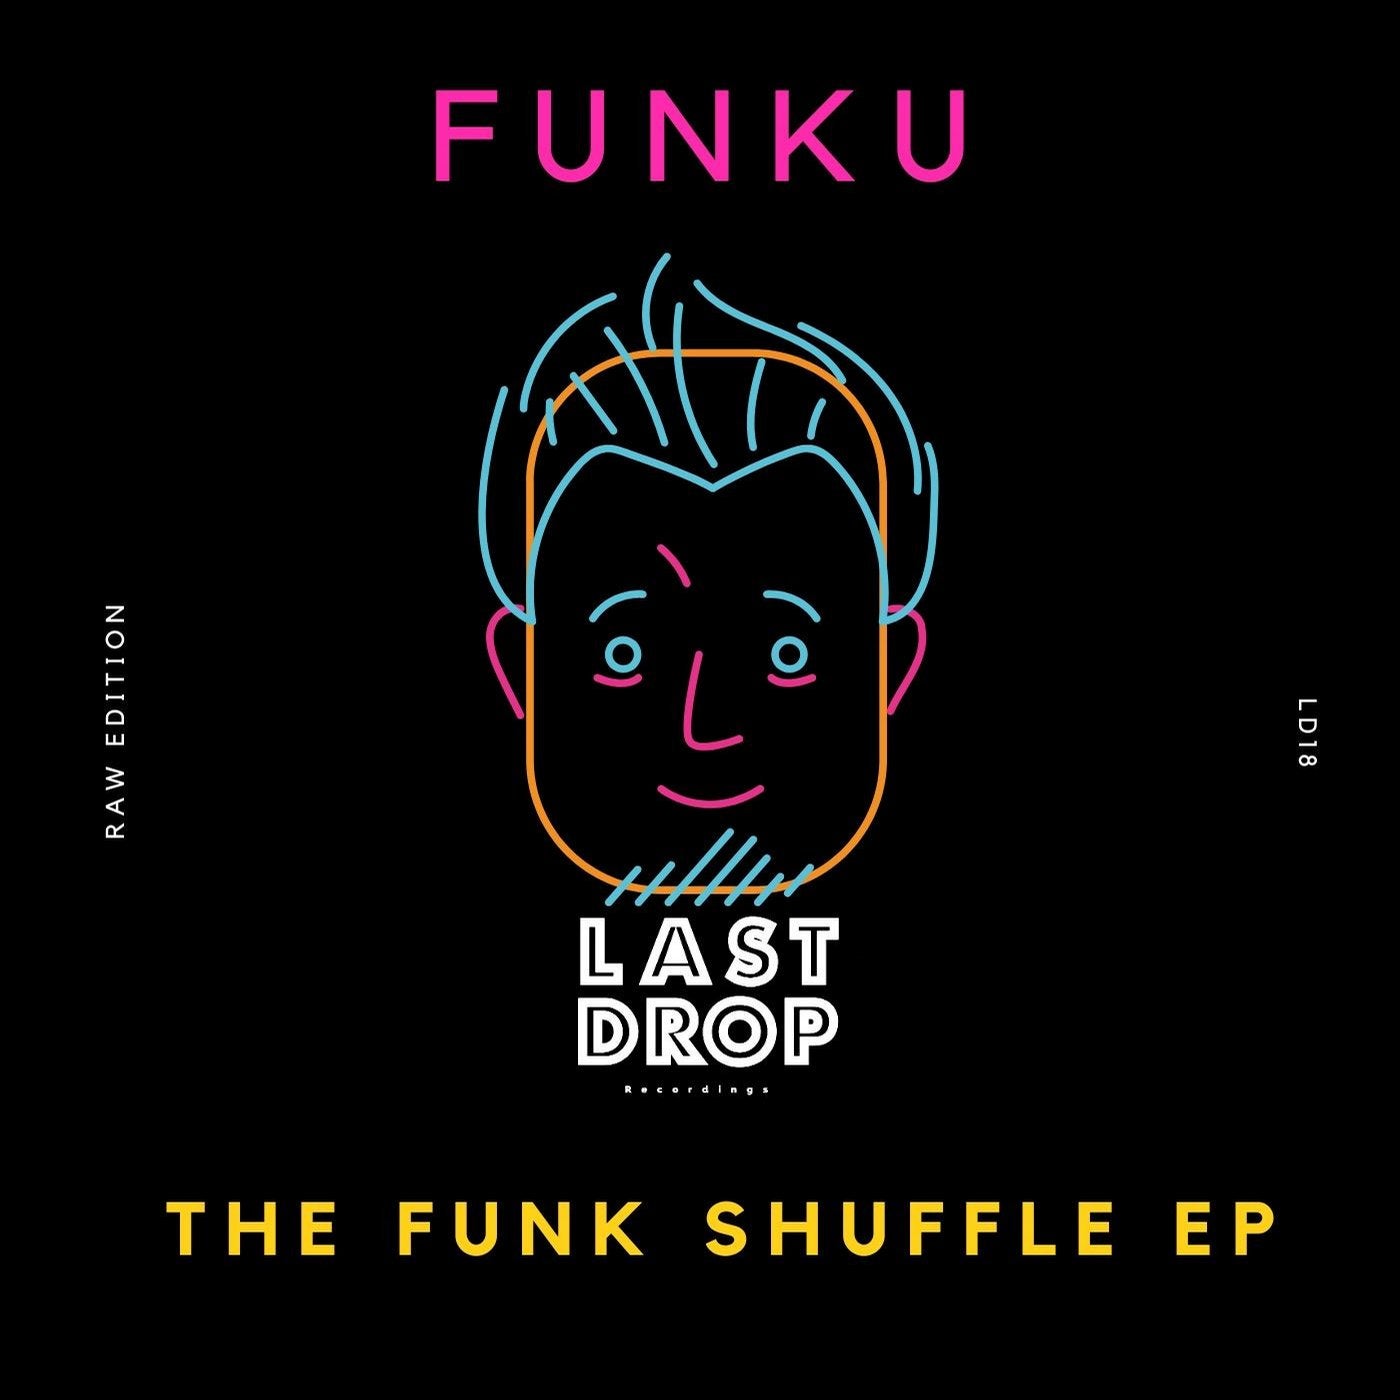 The Funk Shuffle